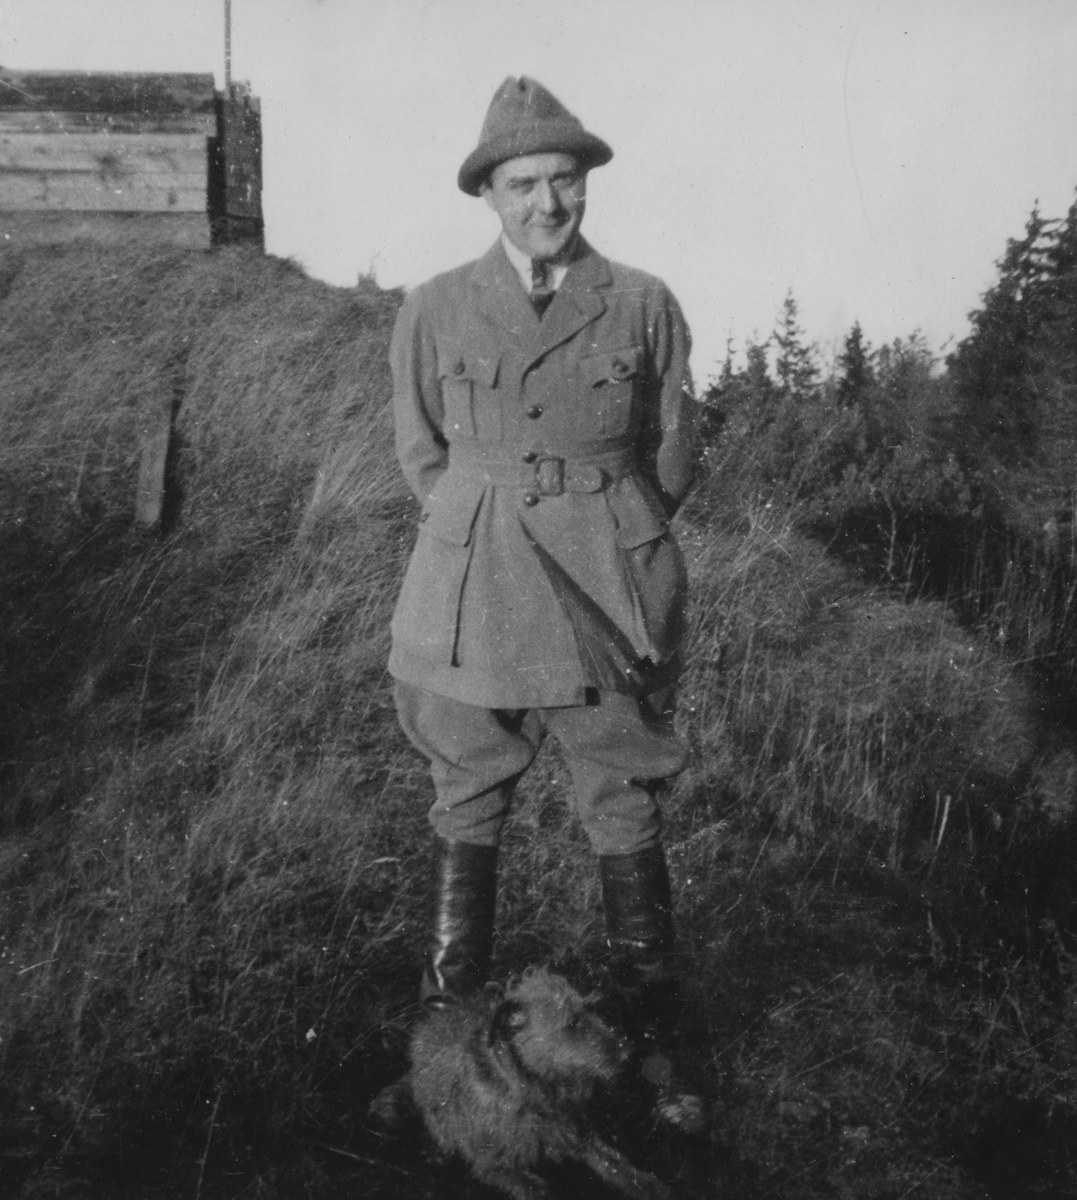 Porträttfoto av militären Nils Kindberg med hund framför framför militär anläggning, 1924.

Text vid foto: "'NK. BK."